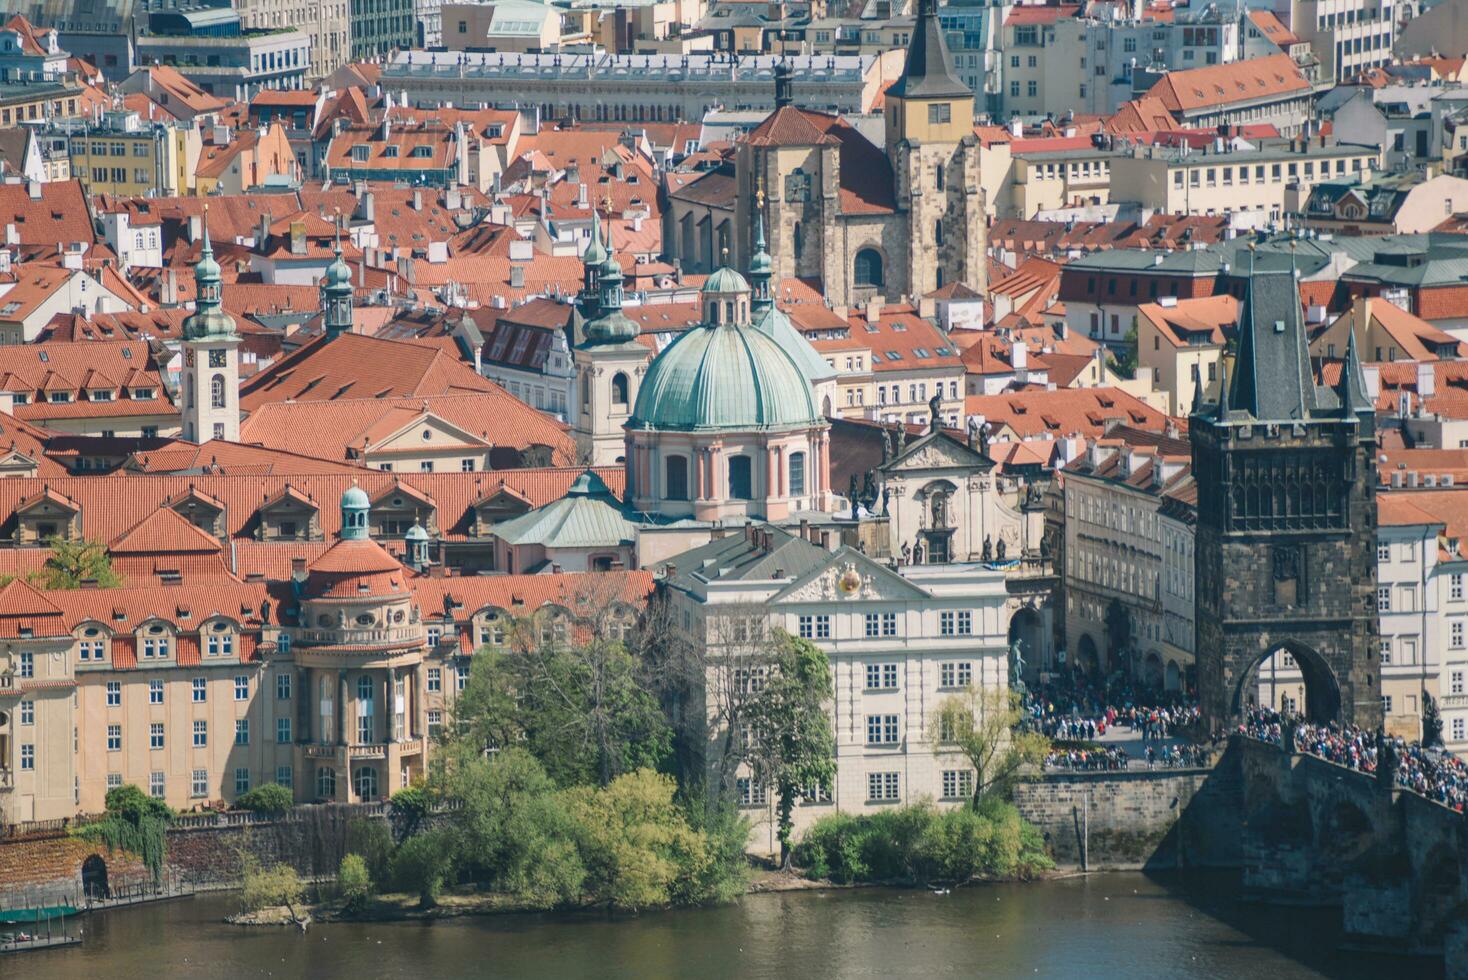 lindo Visão do a cidade Praga foto